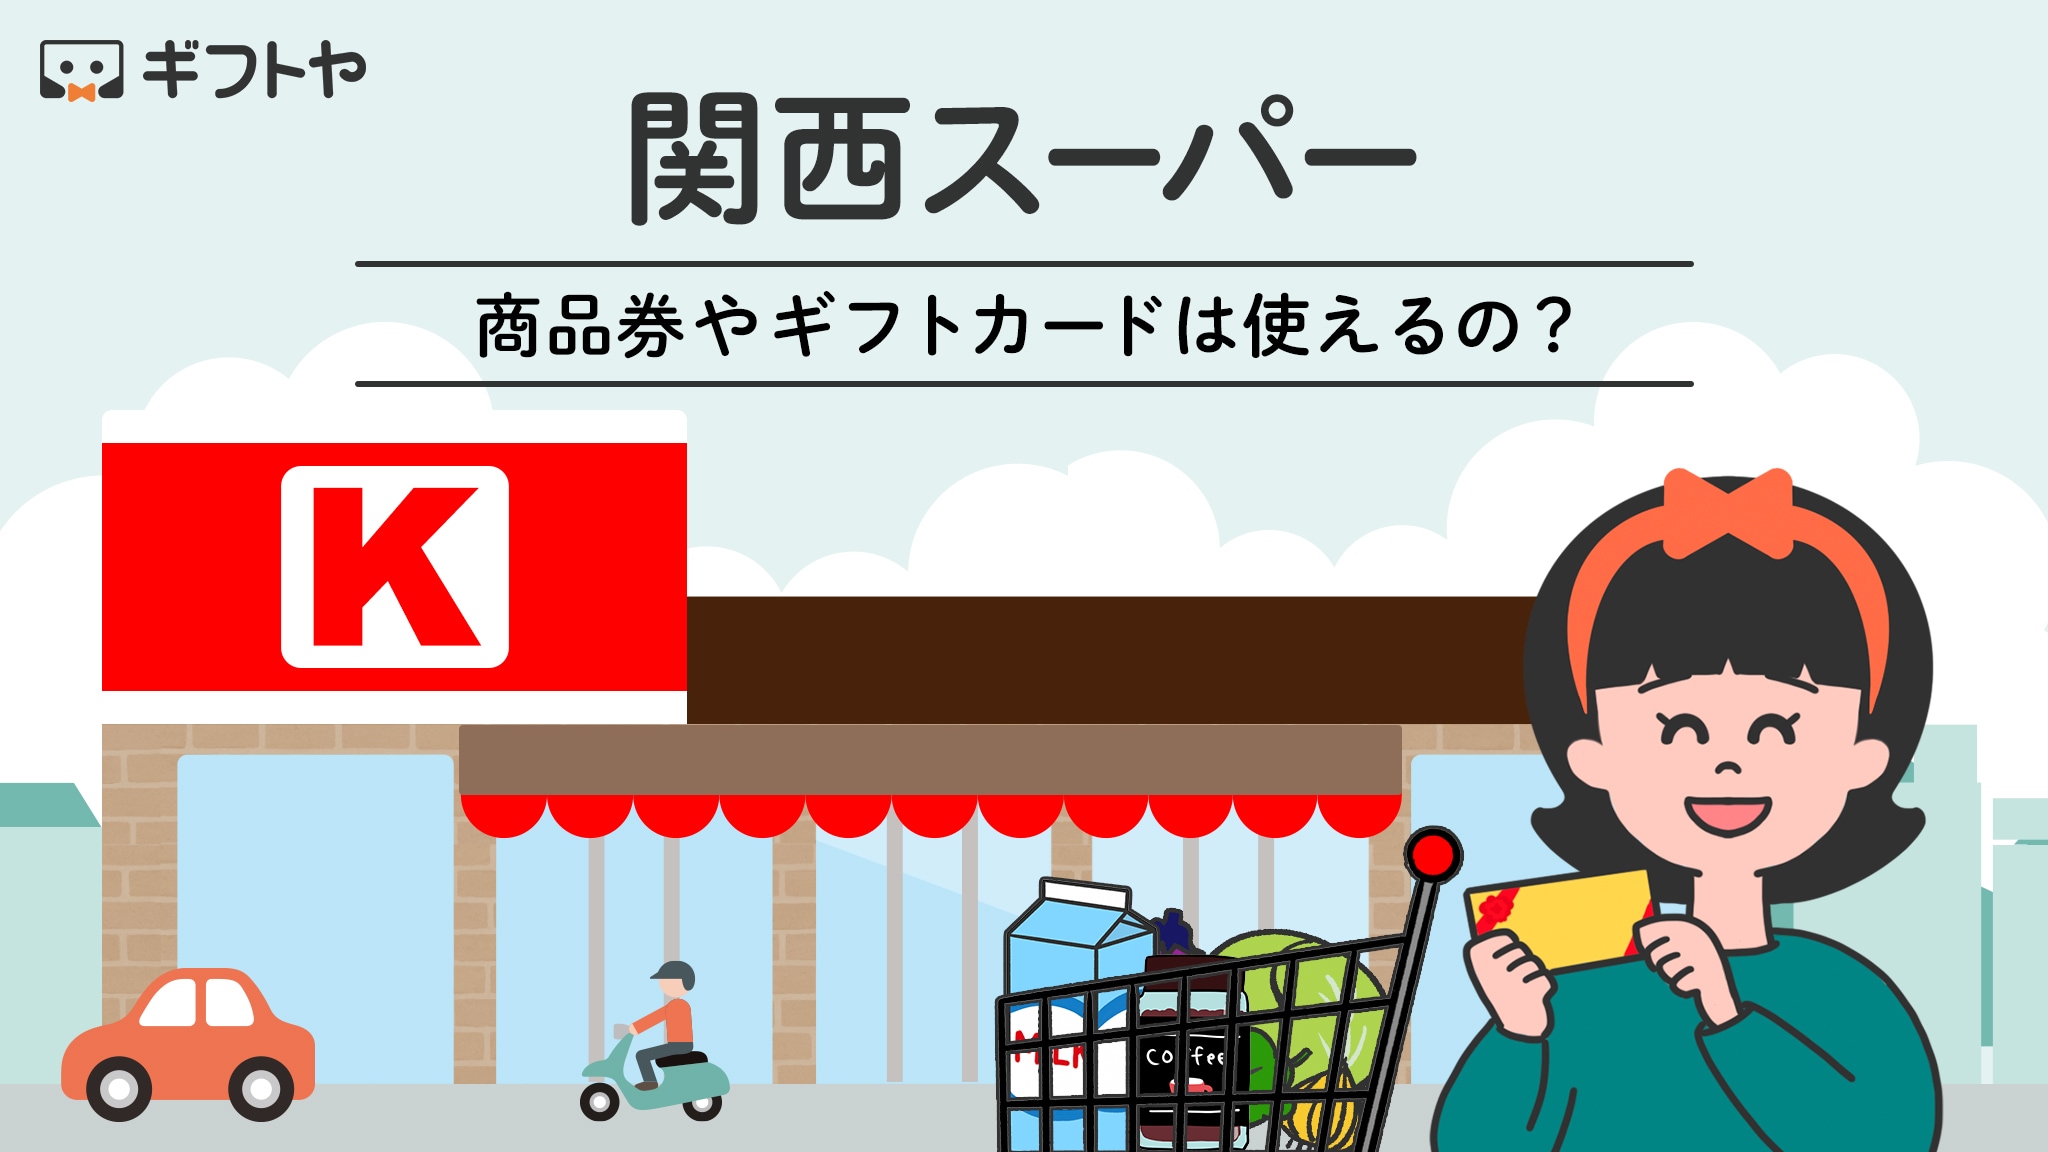 関西スーパーで使える商品券やギフトカード・支払い方法